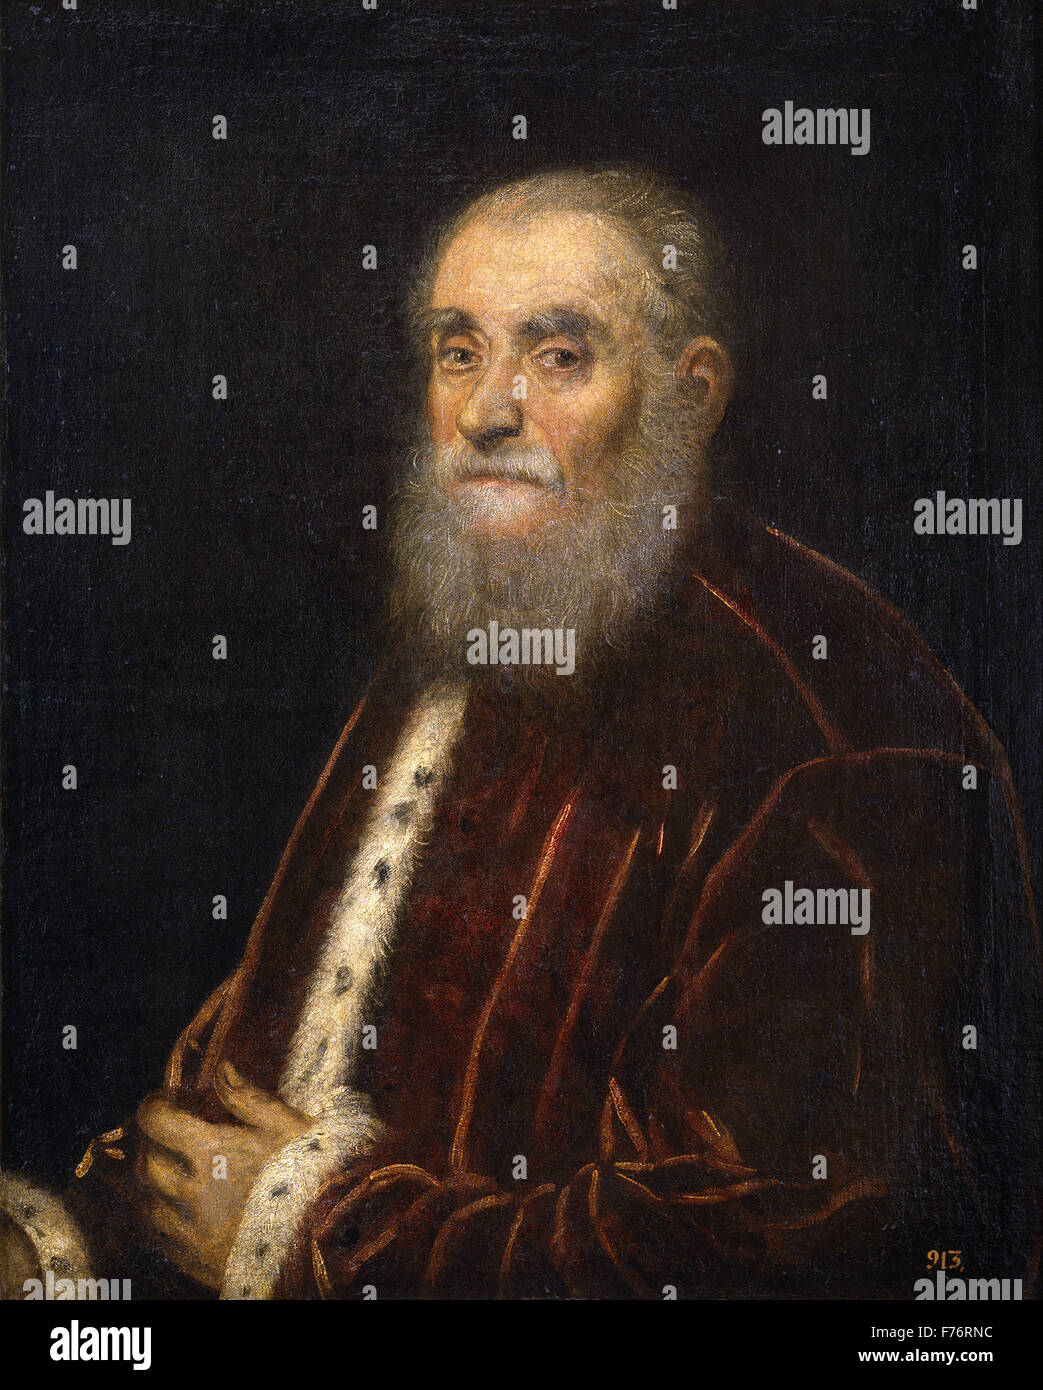 Jacopo Tintoretto - Marco Grimani Foto de stock